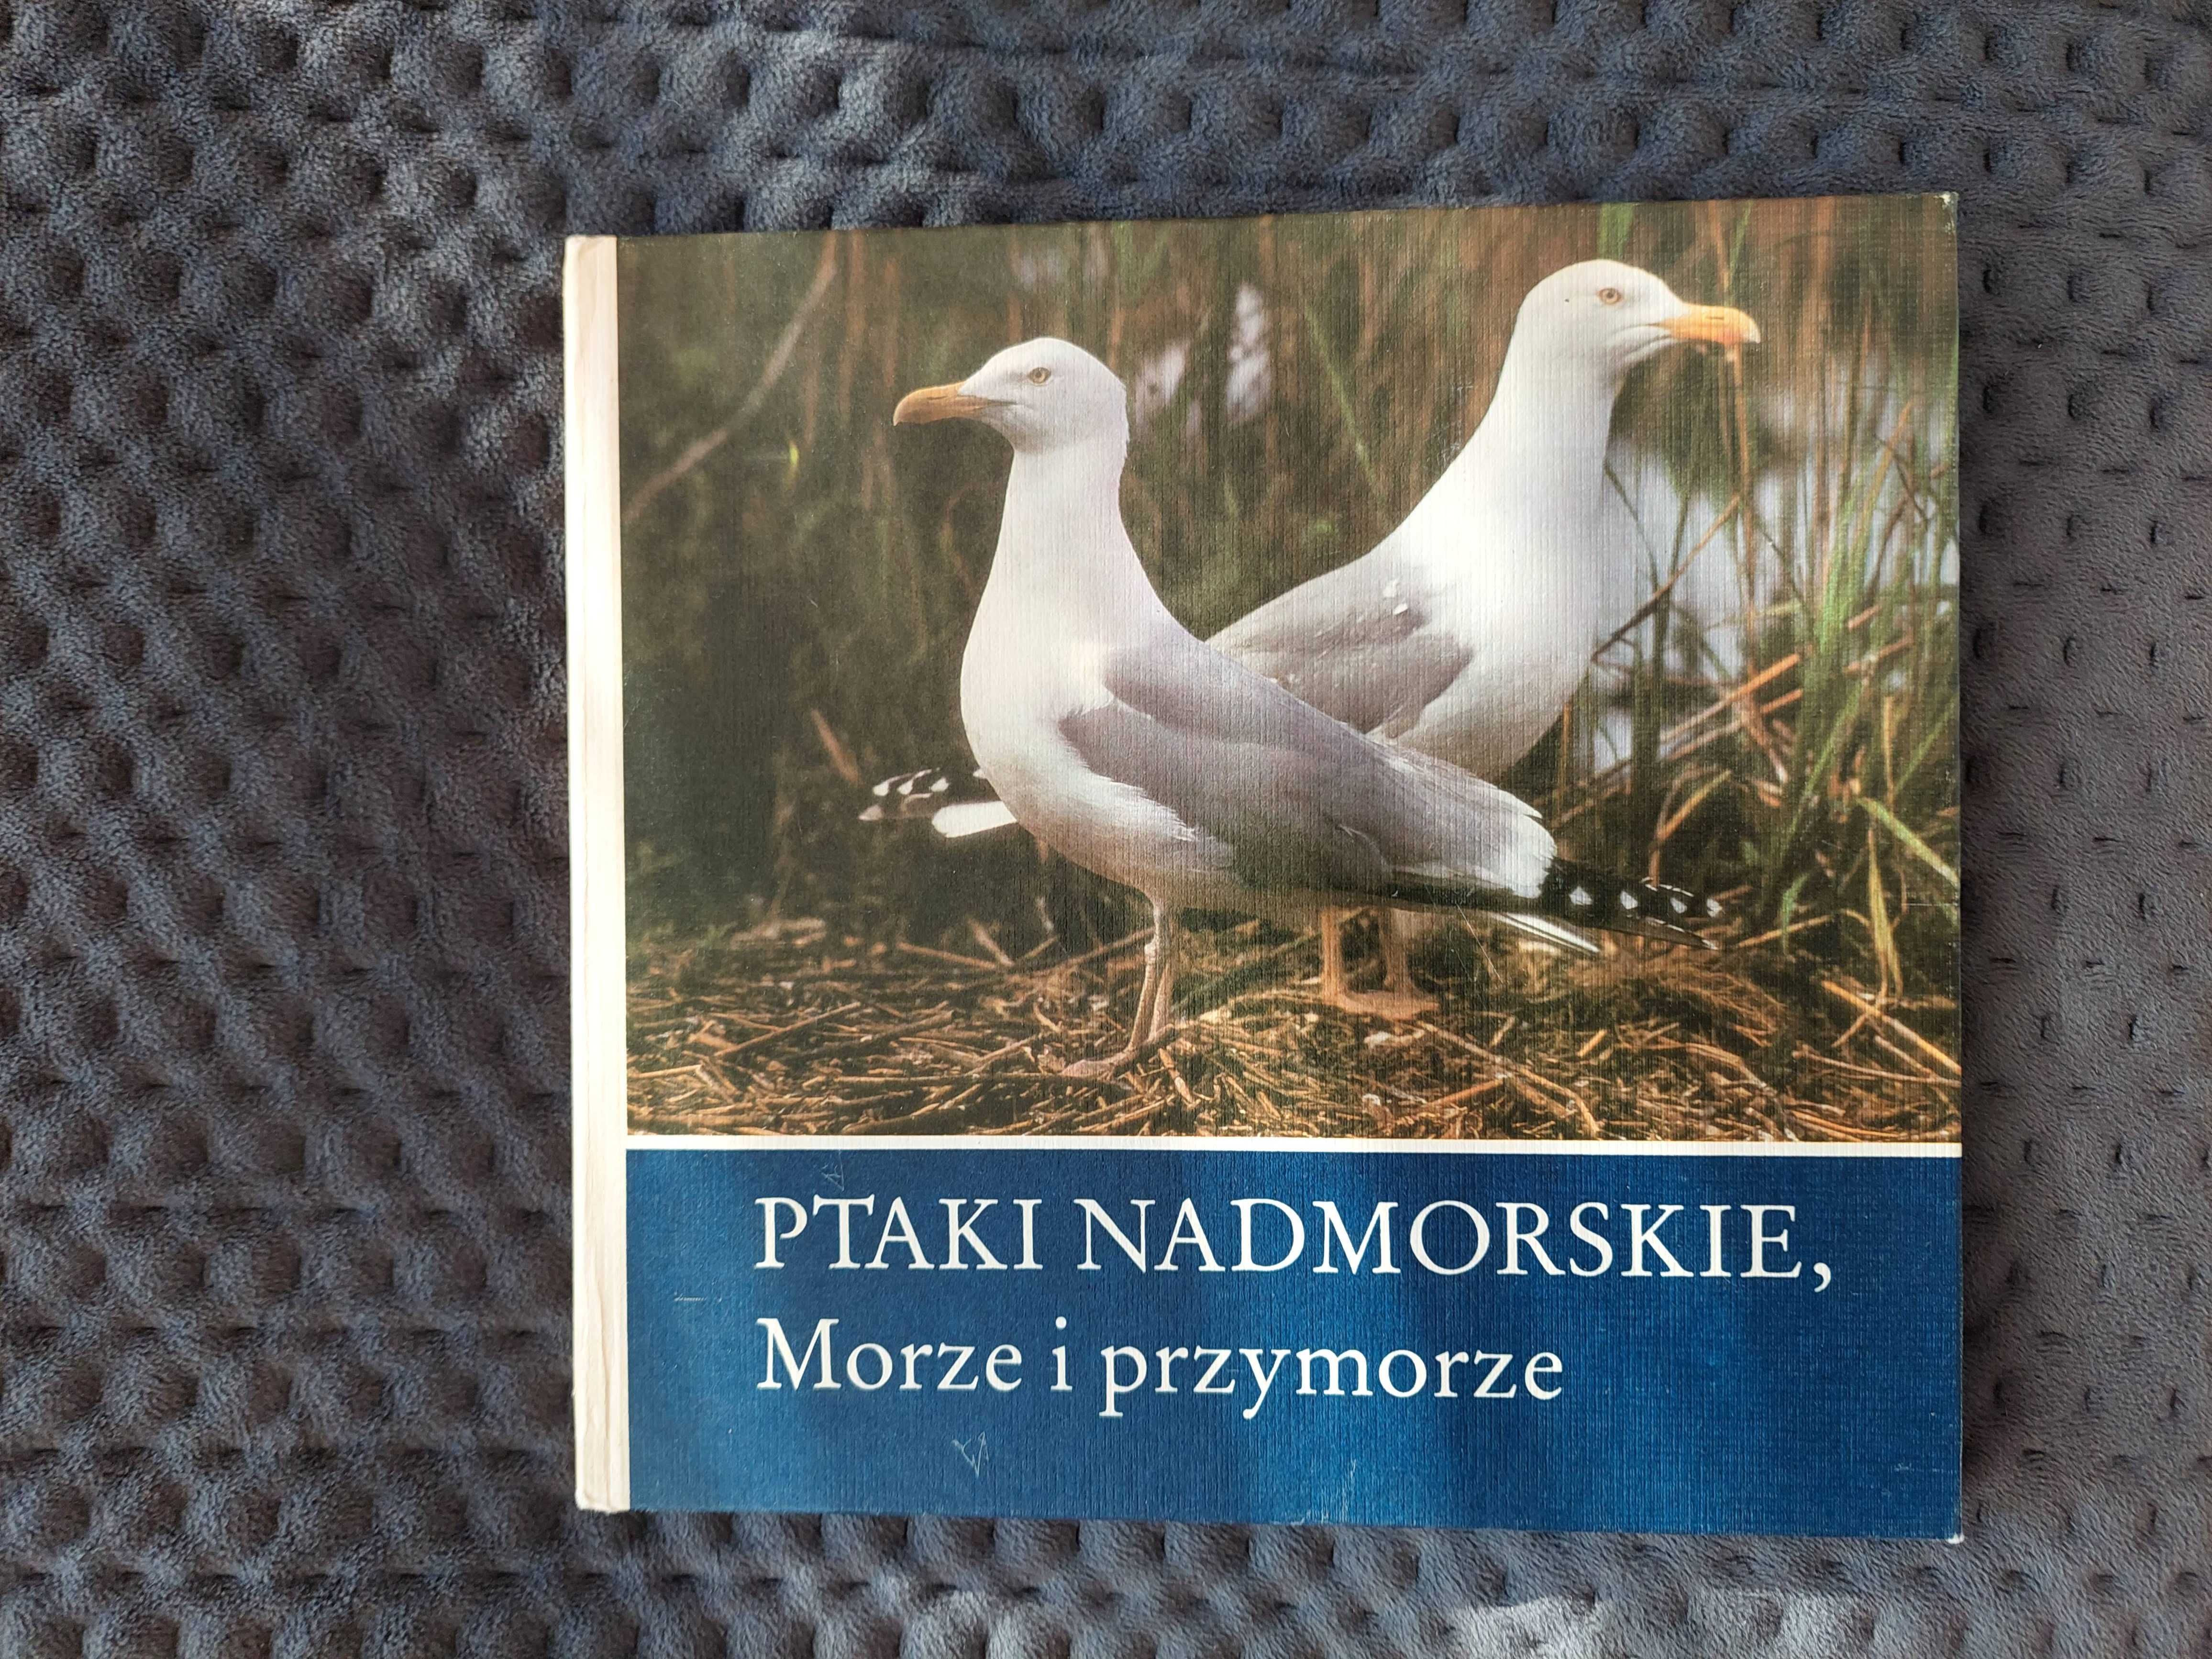 Książka "Ptaki nadmorskie, Morze i przymorze". Claus Schonert.